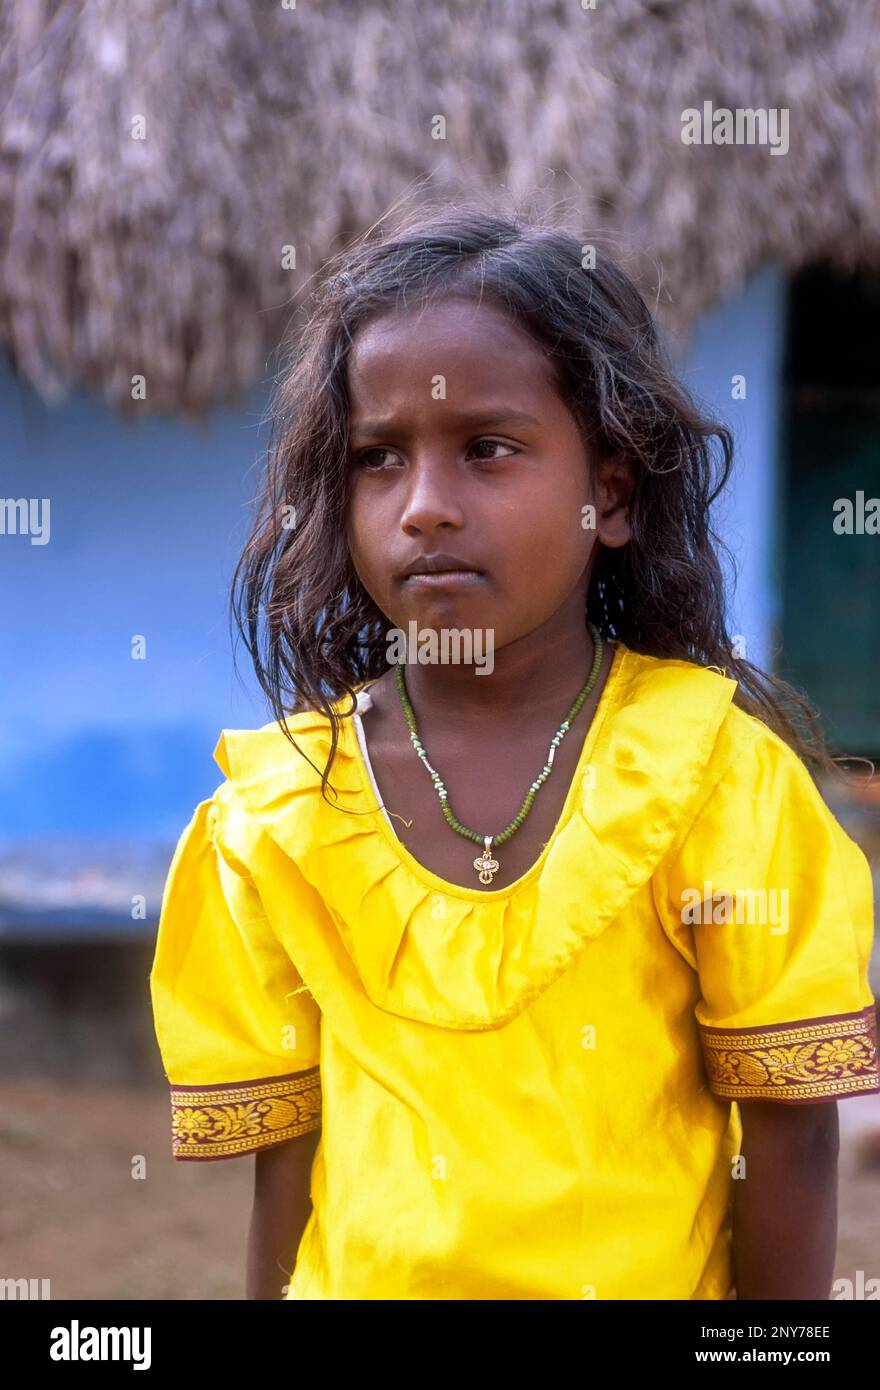 Ragazza del villaggio, Tamil Nadu, India Foto Stock